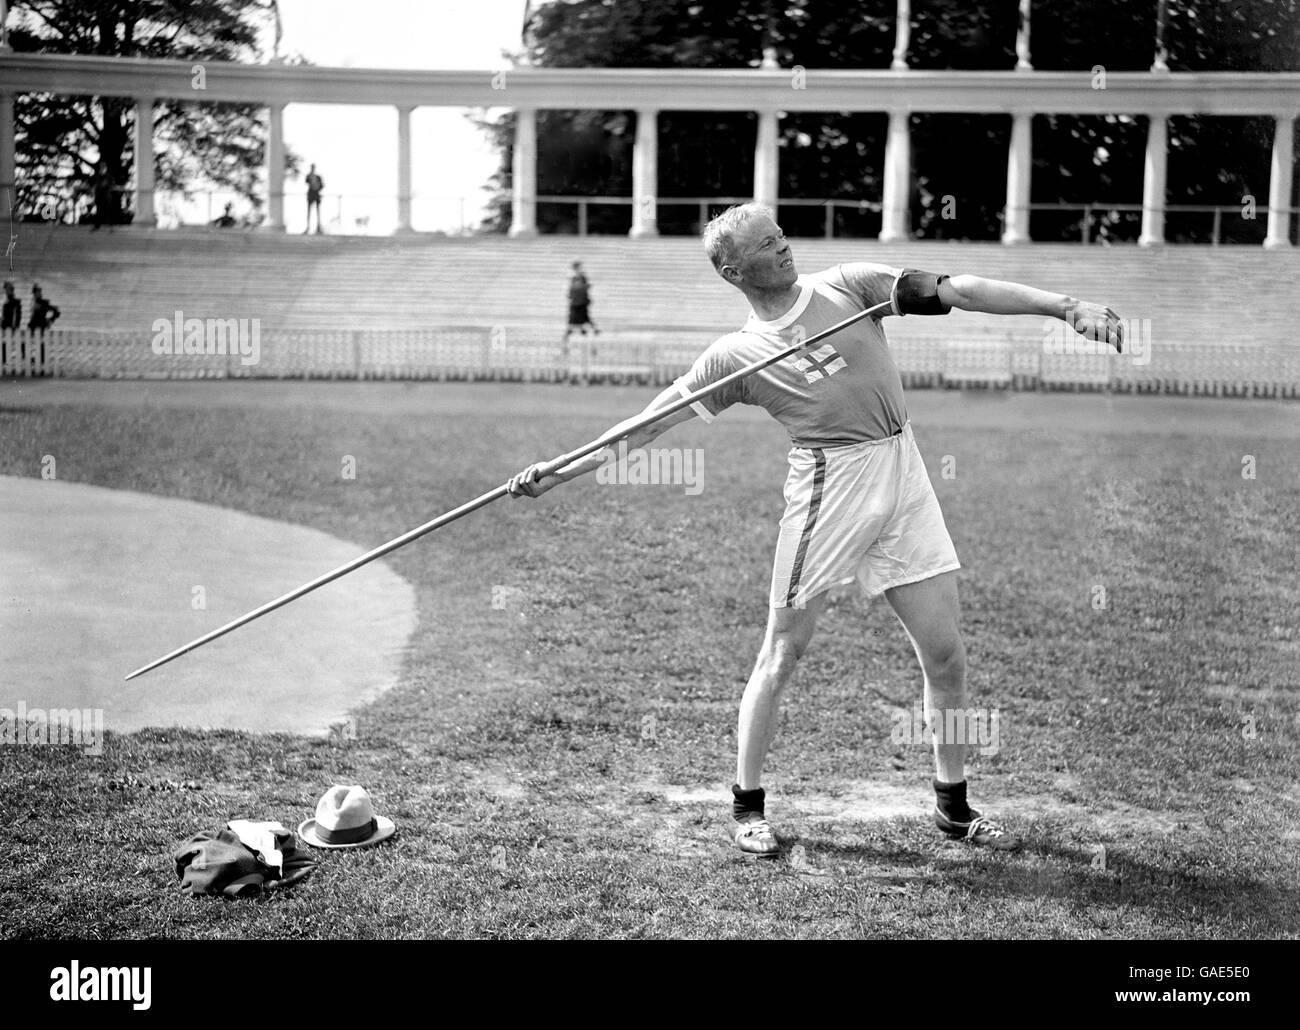 Giochi Olimpici di Anversa 1920 - Atletica - Javelin. Jonni Myyra della Finlandia vince il giavelin. Foto Stock